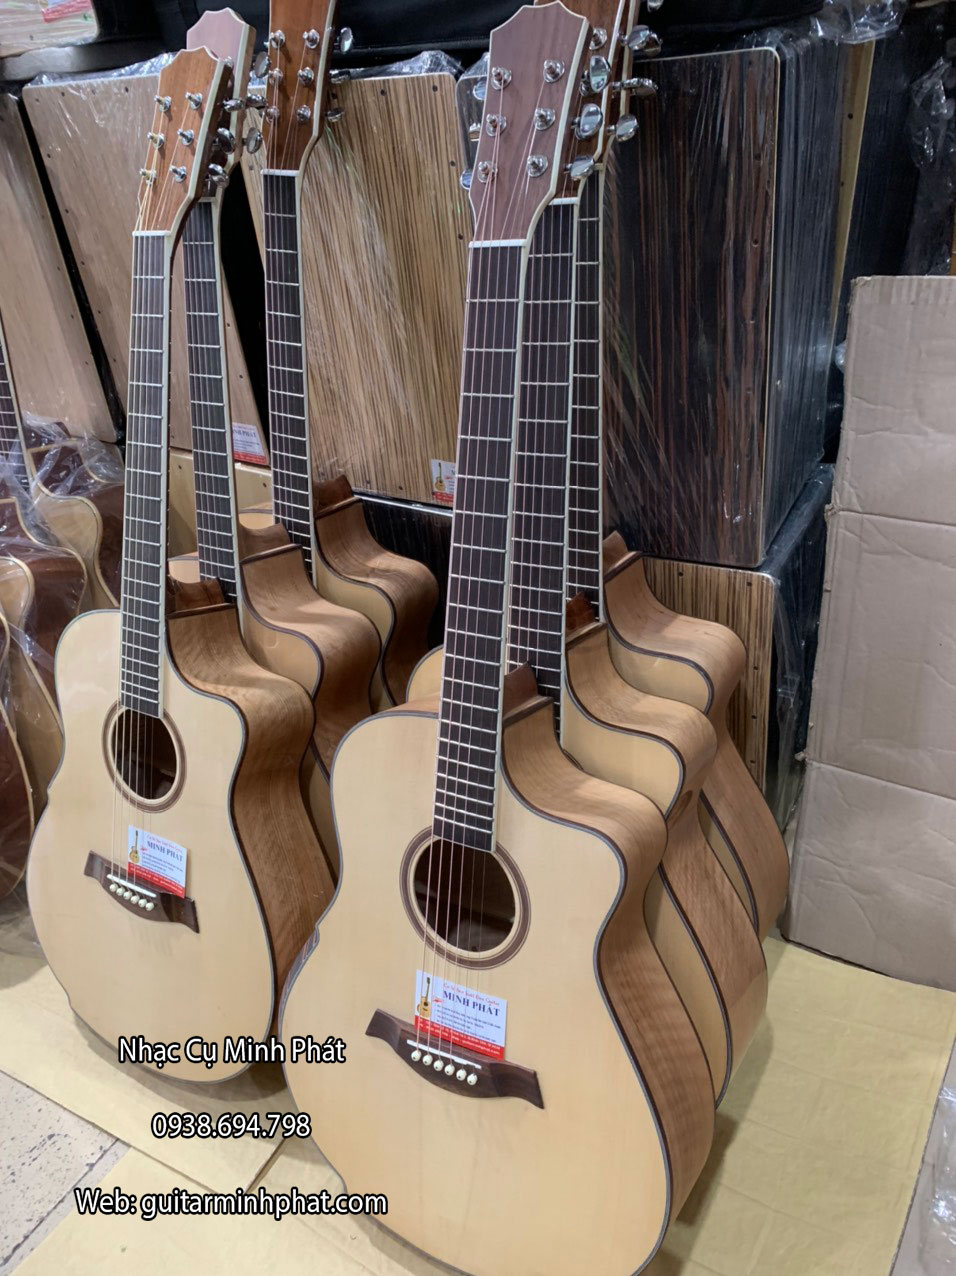 Bán đàn guitar và phụ kiện guitar chính hãng tại quận Bình Tân TPHCM